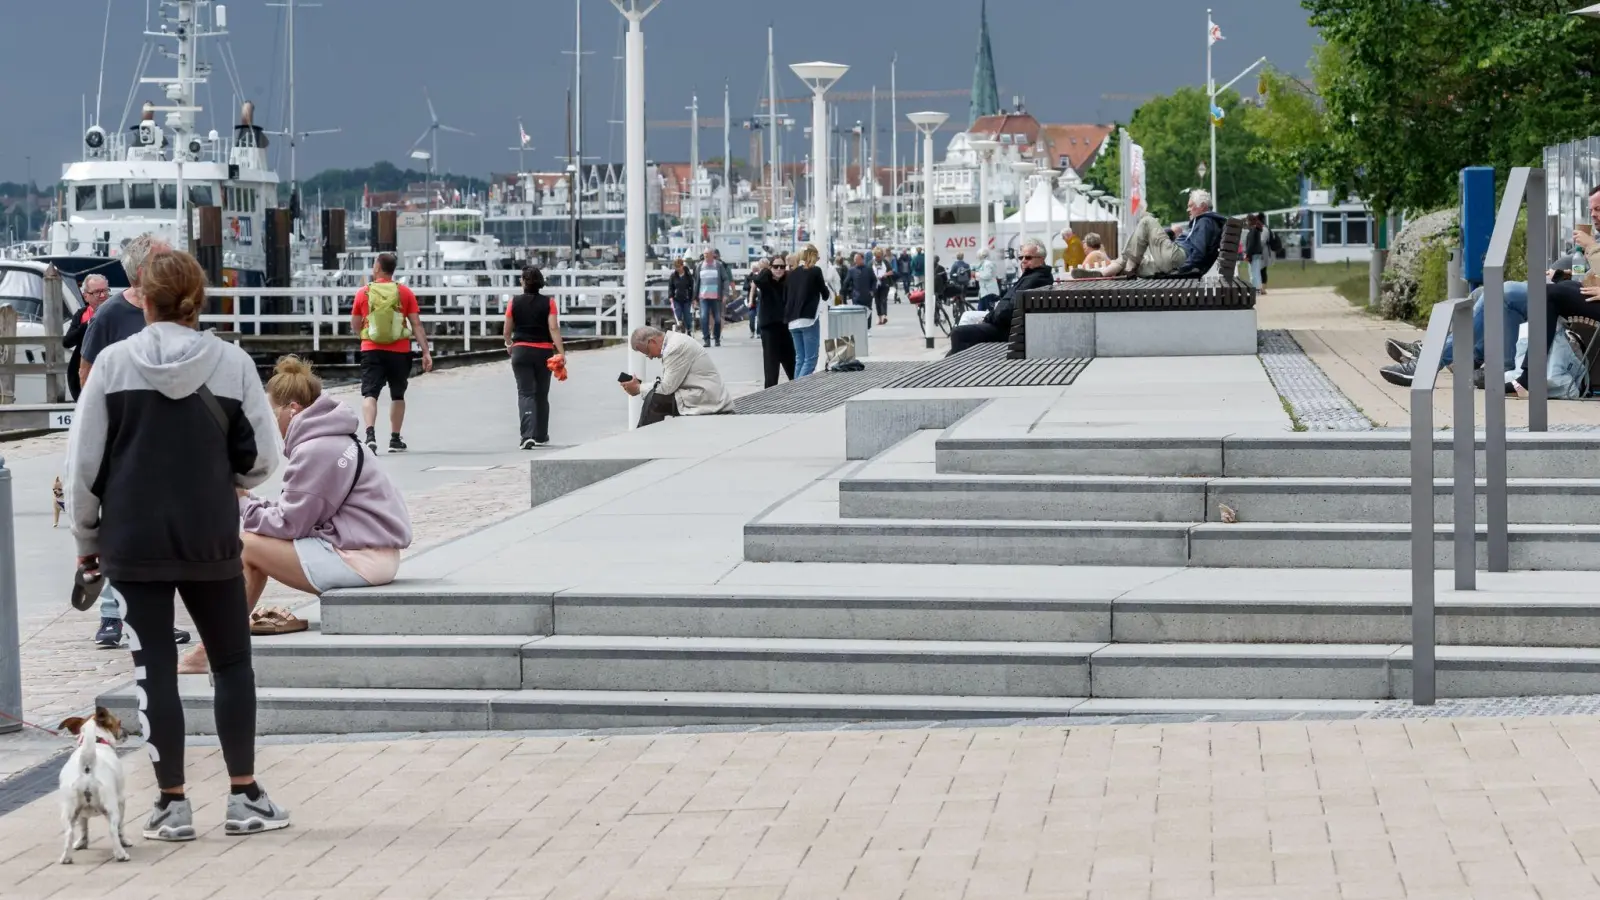 Hell gepflasterte Plätze und gestufte Zugänge, auf denen auch gesessen werden kann, sind die Kennzeichen der neugestalteten Travepromenade in Travemünde. (Foto: Markus Scholz/dpa)